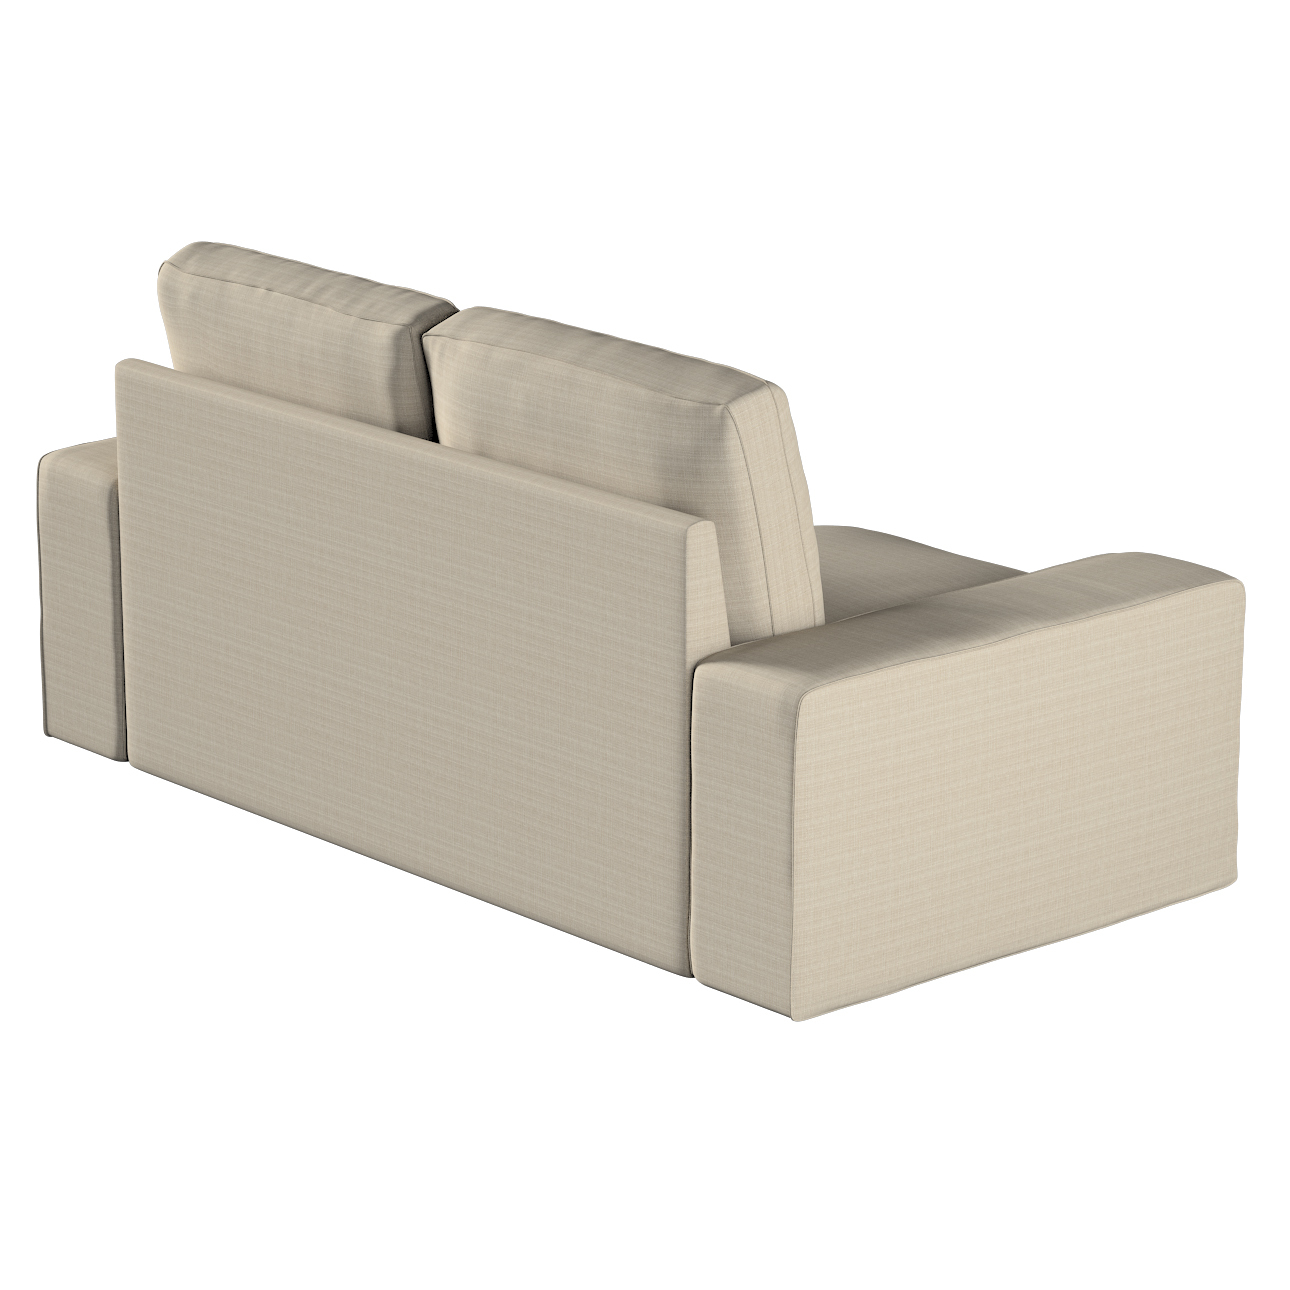 Bezug für Kivik 2-Sitzer Sofa, beige, Bezug für Sofa Kivik 2-Sitzer, Living günstig online kaufen